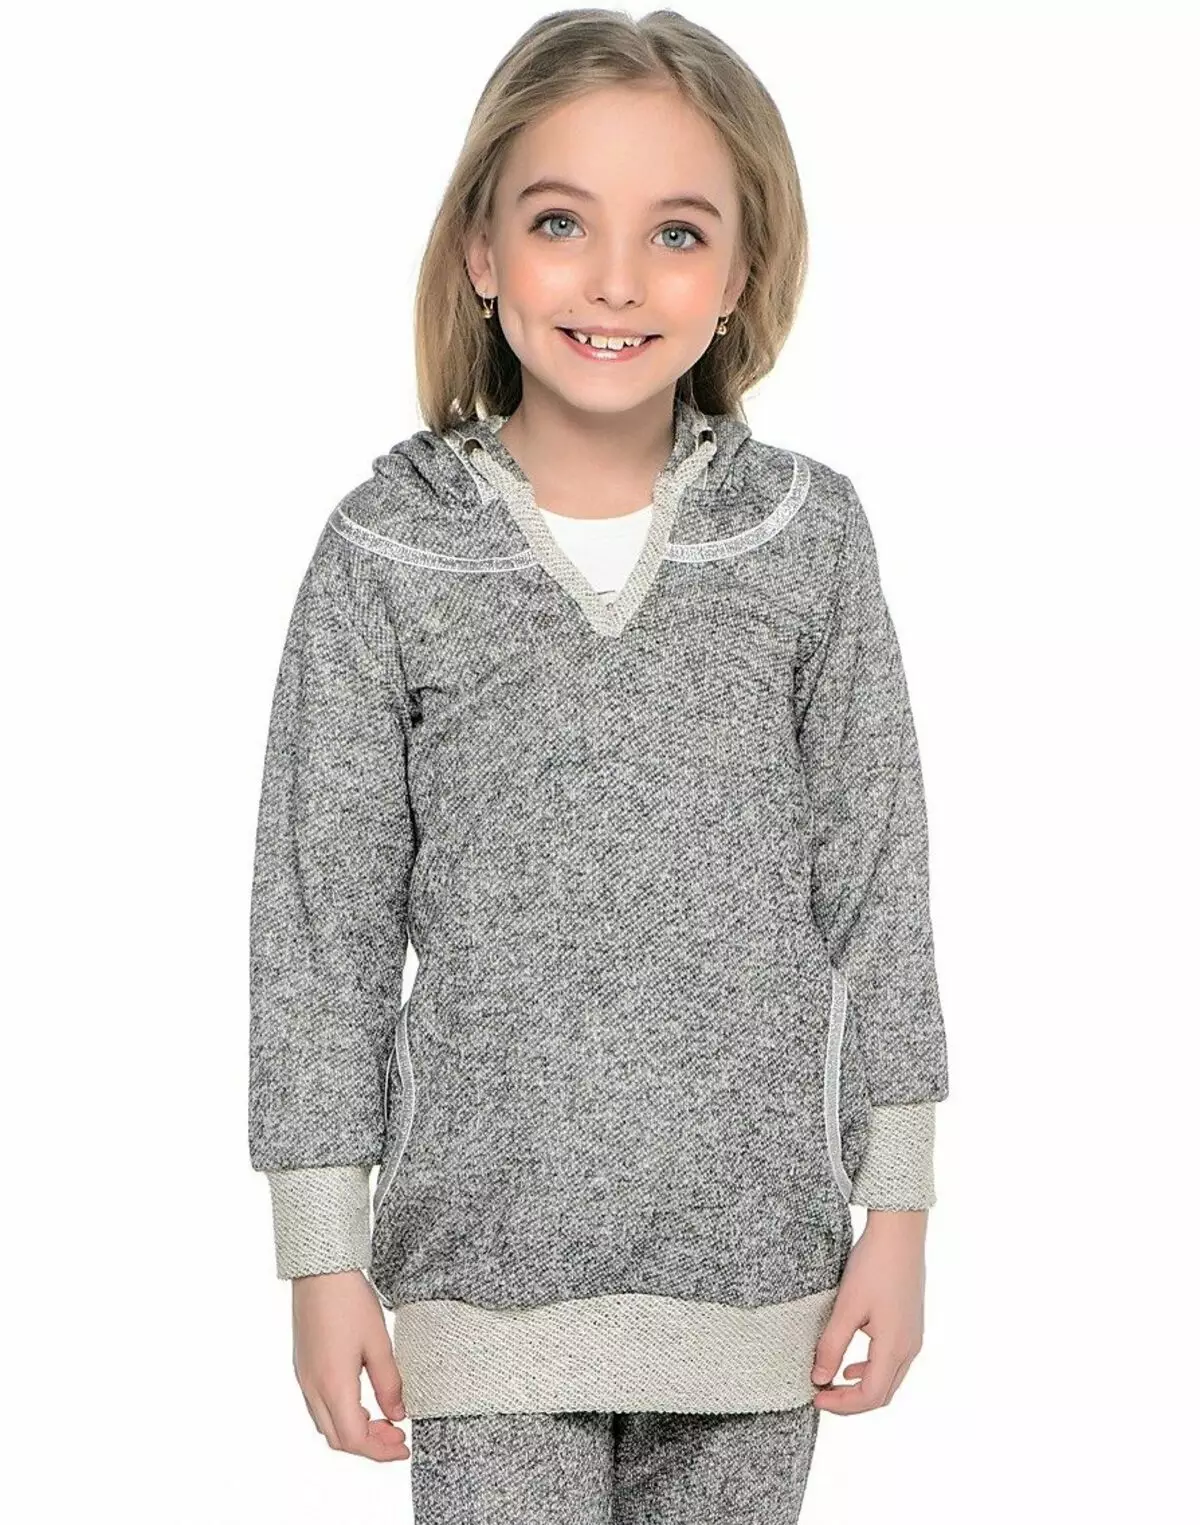 소녀를위한 스웨터 (80 장 사진) : 소녀를위한 사춘기 모델 10-12 및 13-14 세, 스웨터 Faberlik, Nekst, 모피, 번개 1326_67